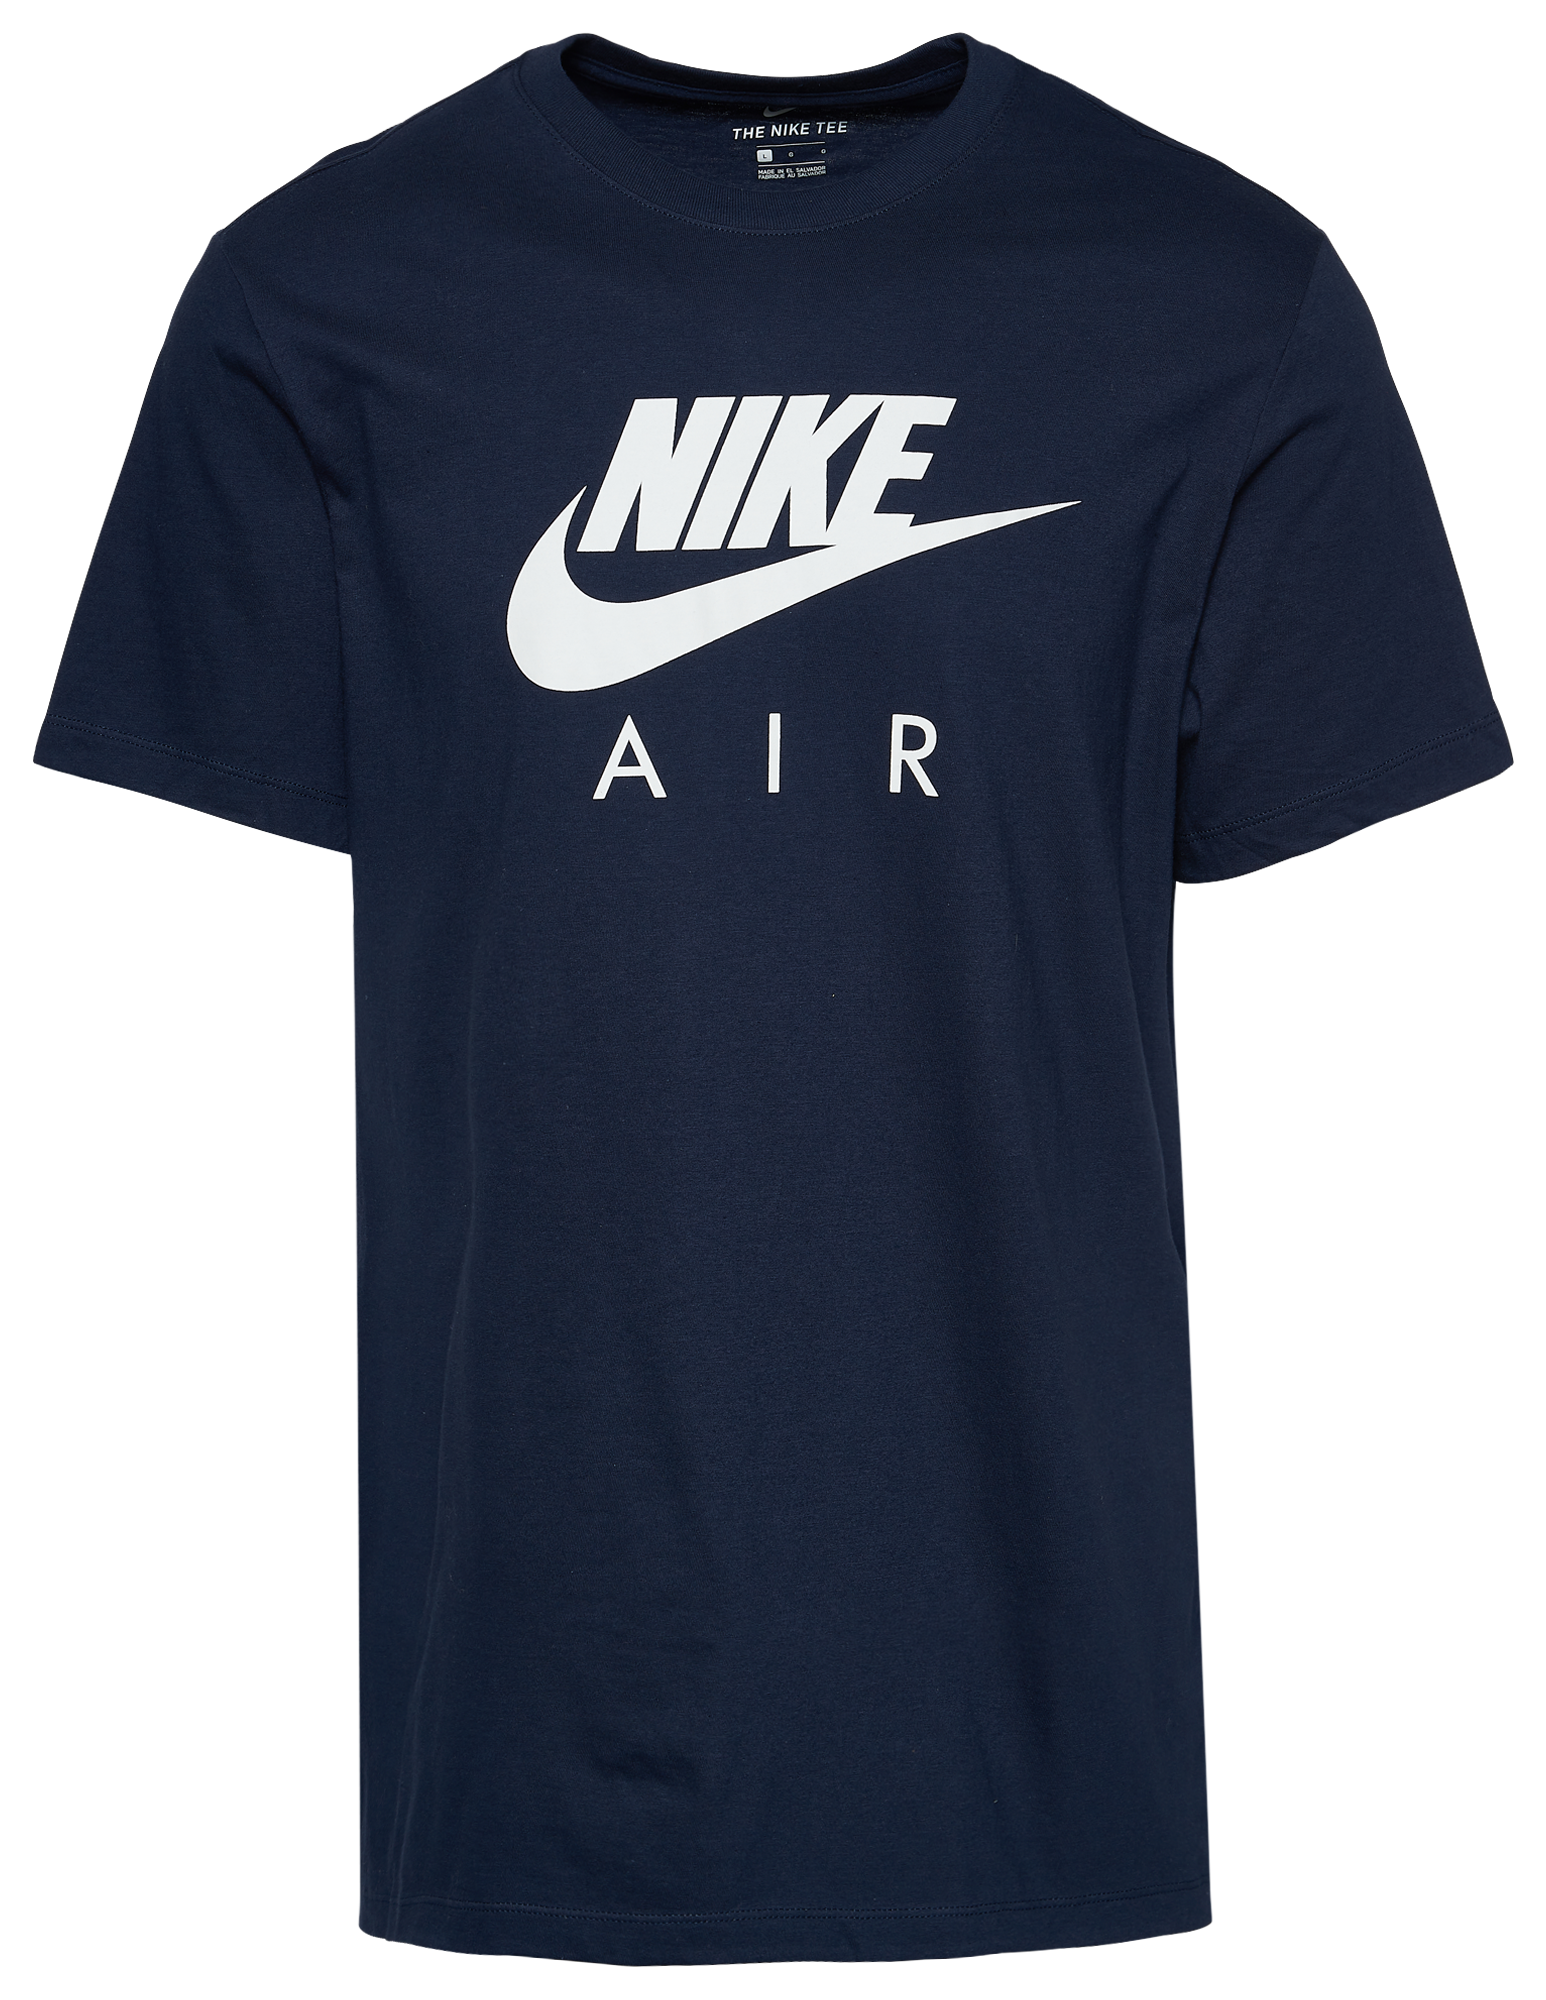 algo Subproducto Maldito Nike Air Futura T-Shirt | Foot Locker